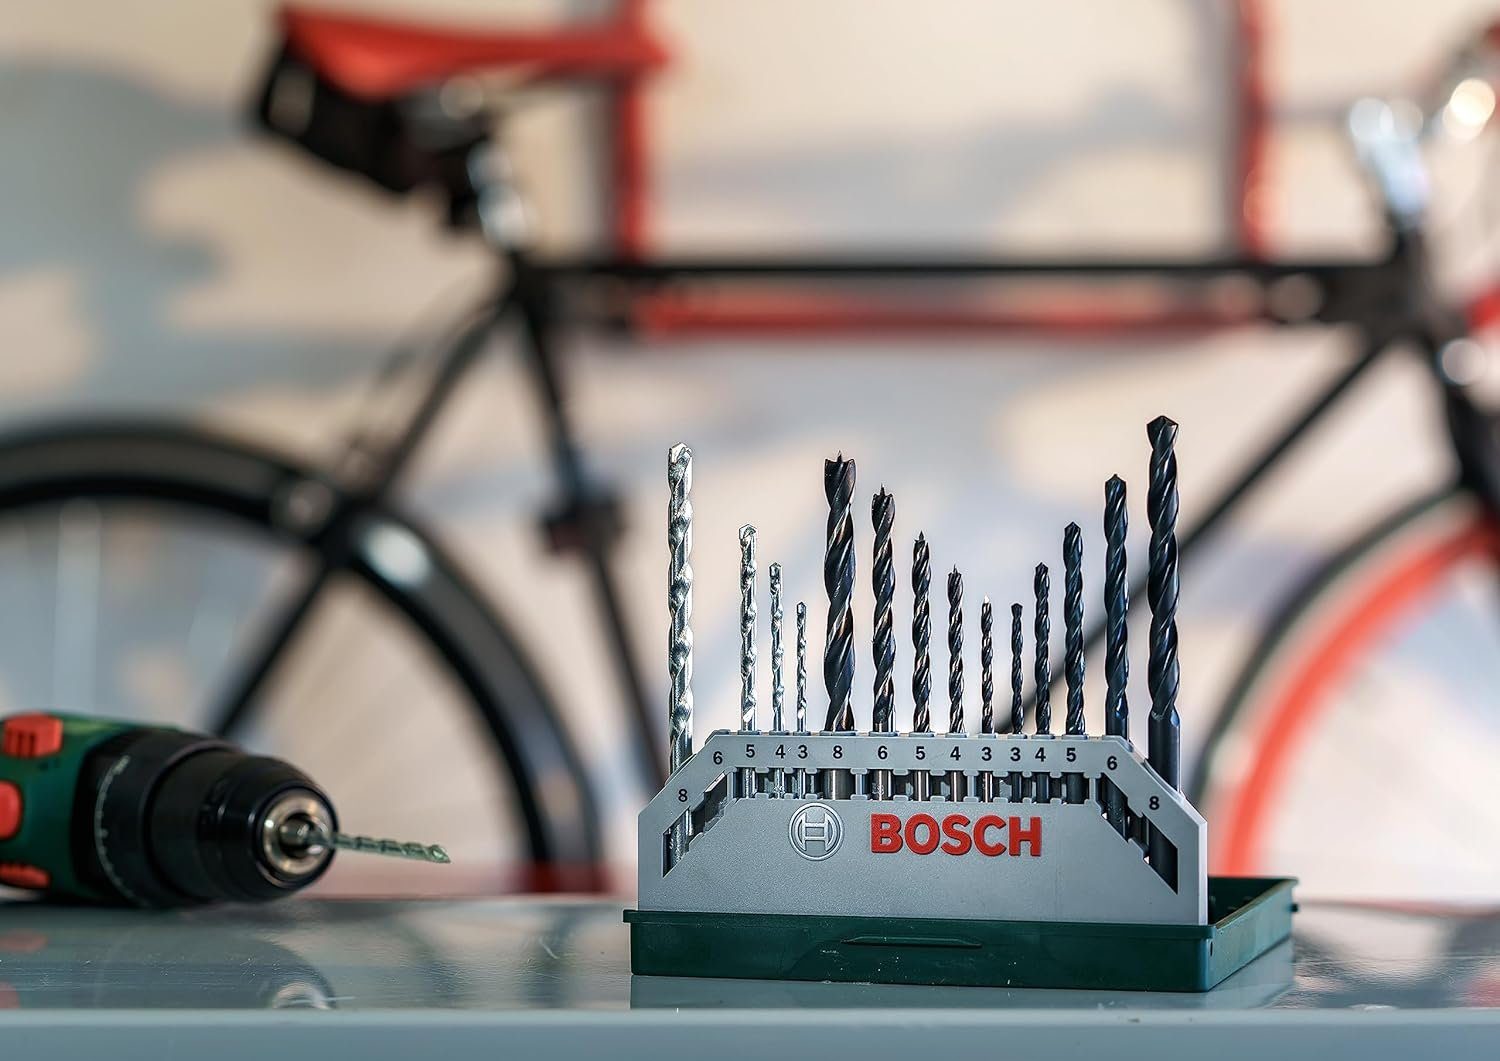 BOSCH Bohrer- und Bitset Metal Spiralbohrer Stein Mixed-Set (Holz, Mini-X-Line 15tlg. und Bosch